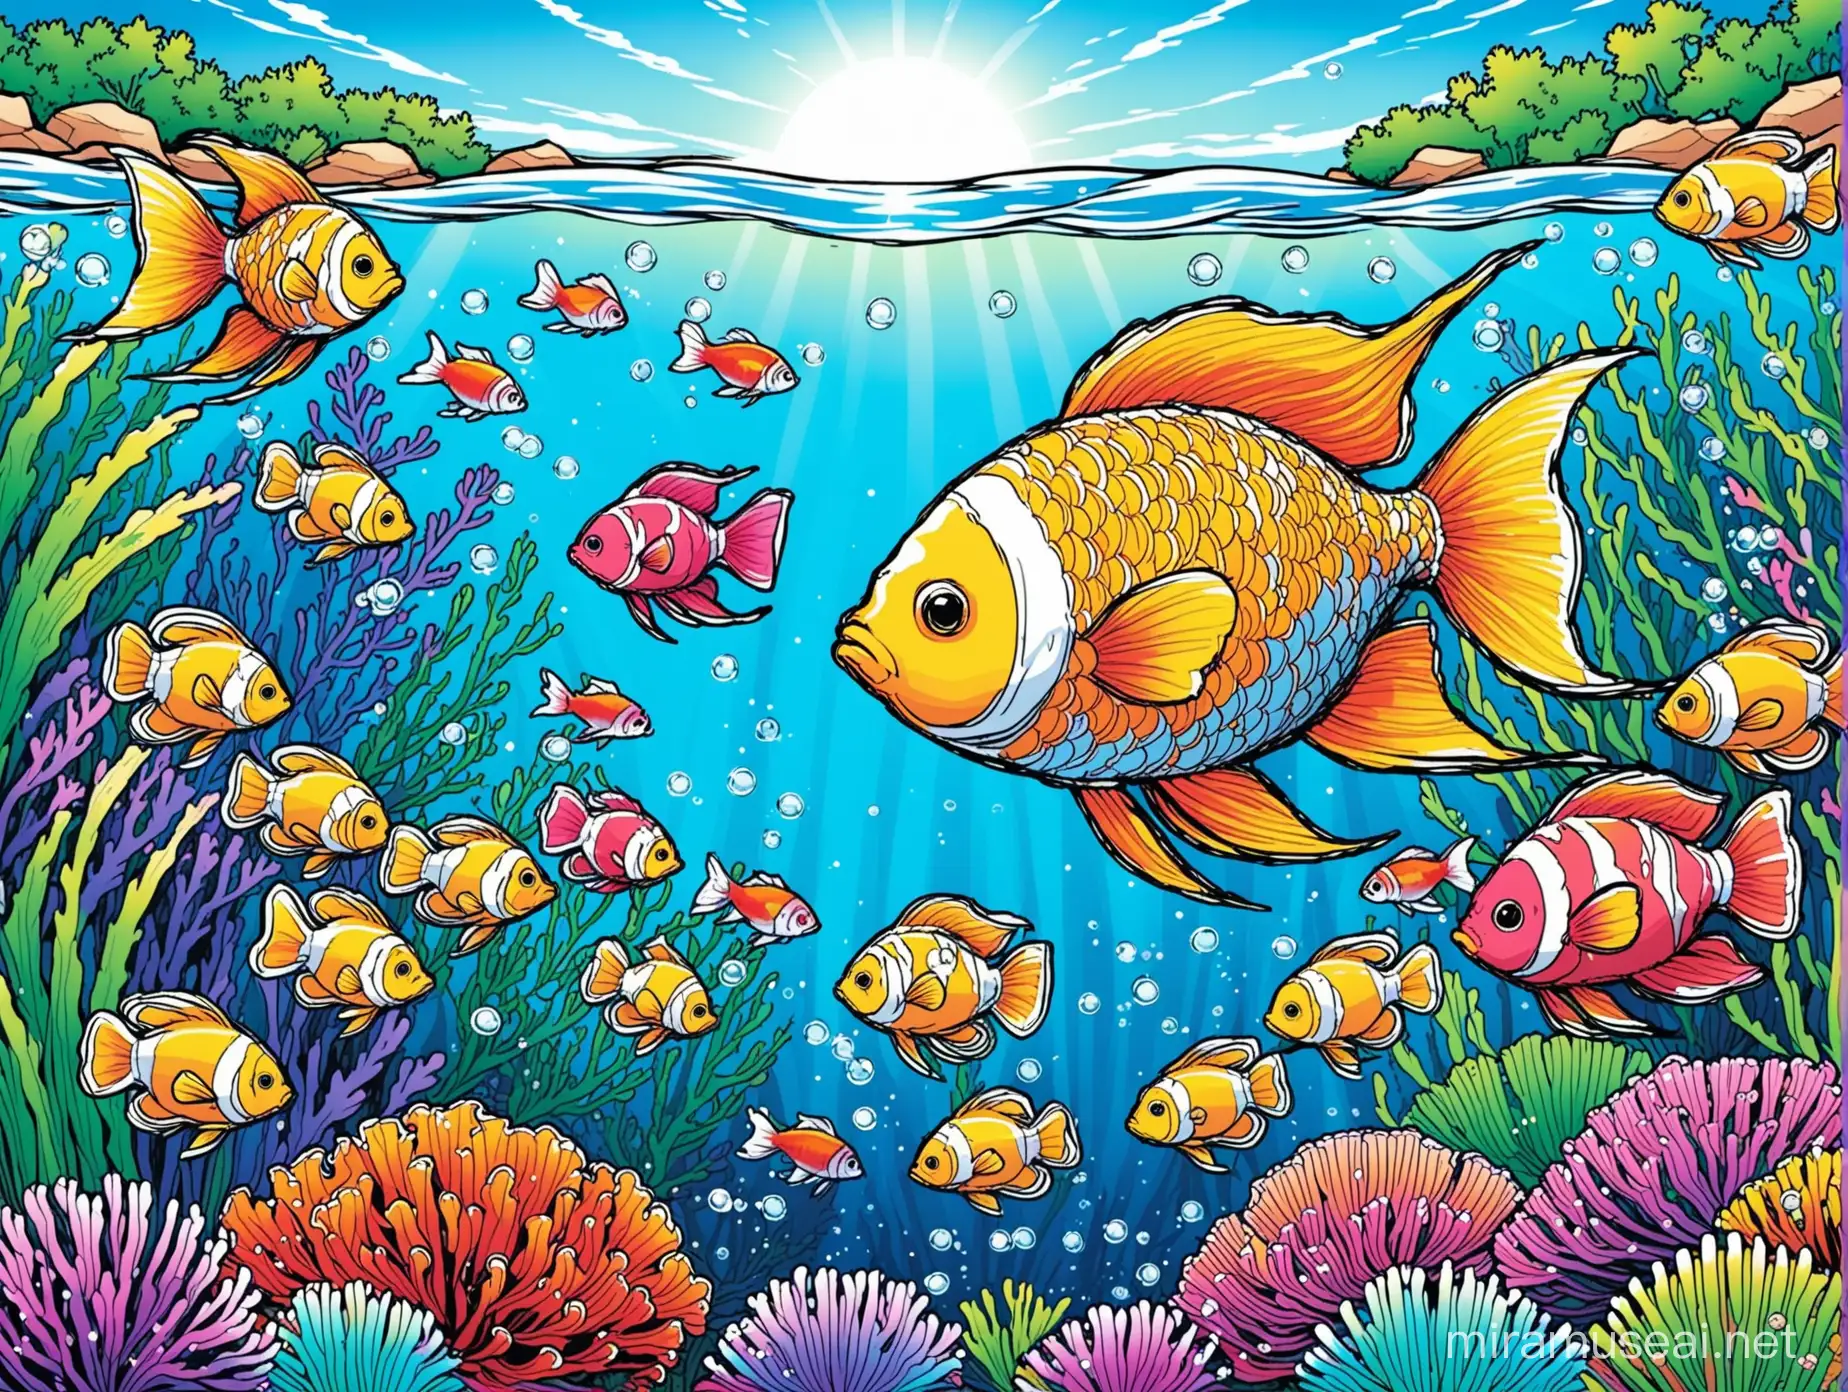 Aquarim fish coloring cover book
